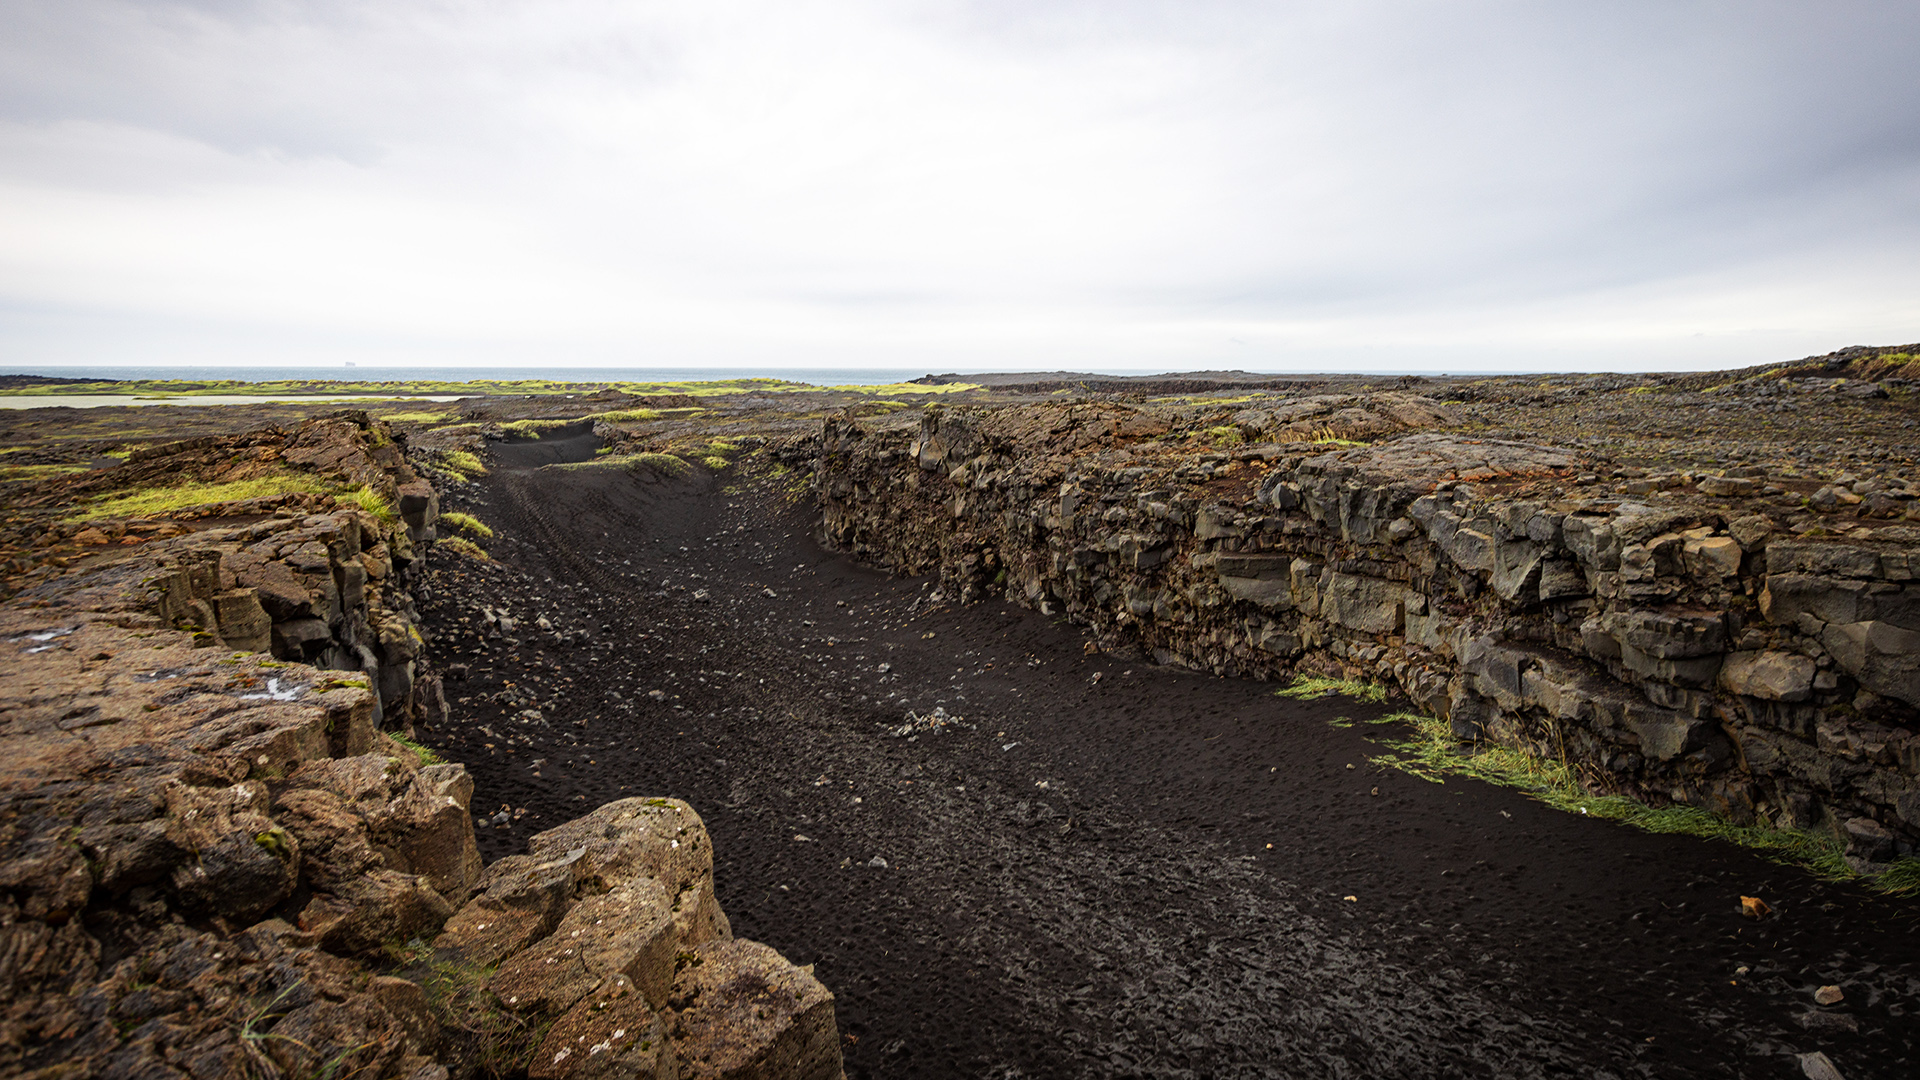 Blick in Schlucht zwischen der nordamerikanischen und eurasischen tektonischen Platte auf der Halbinsel Reykjanes, Island